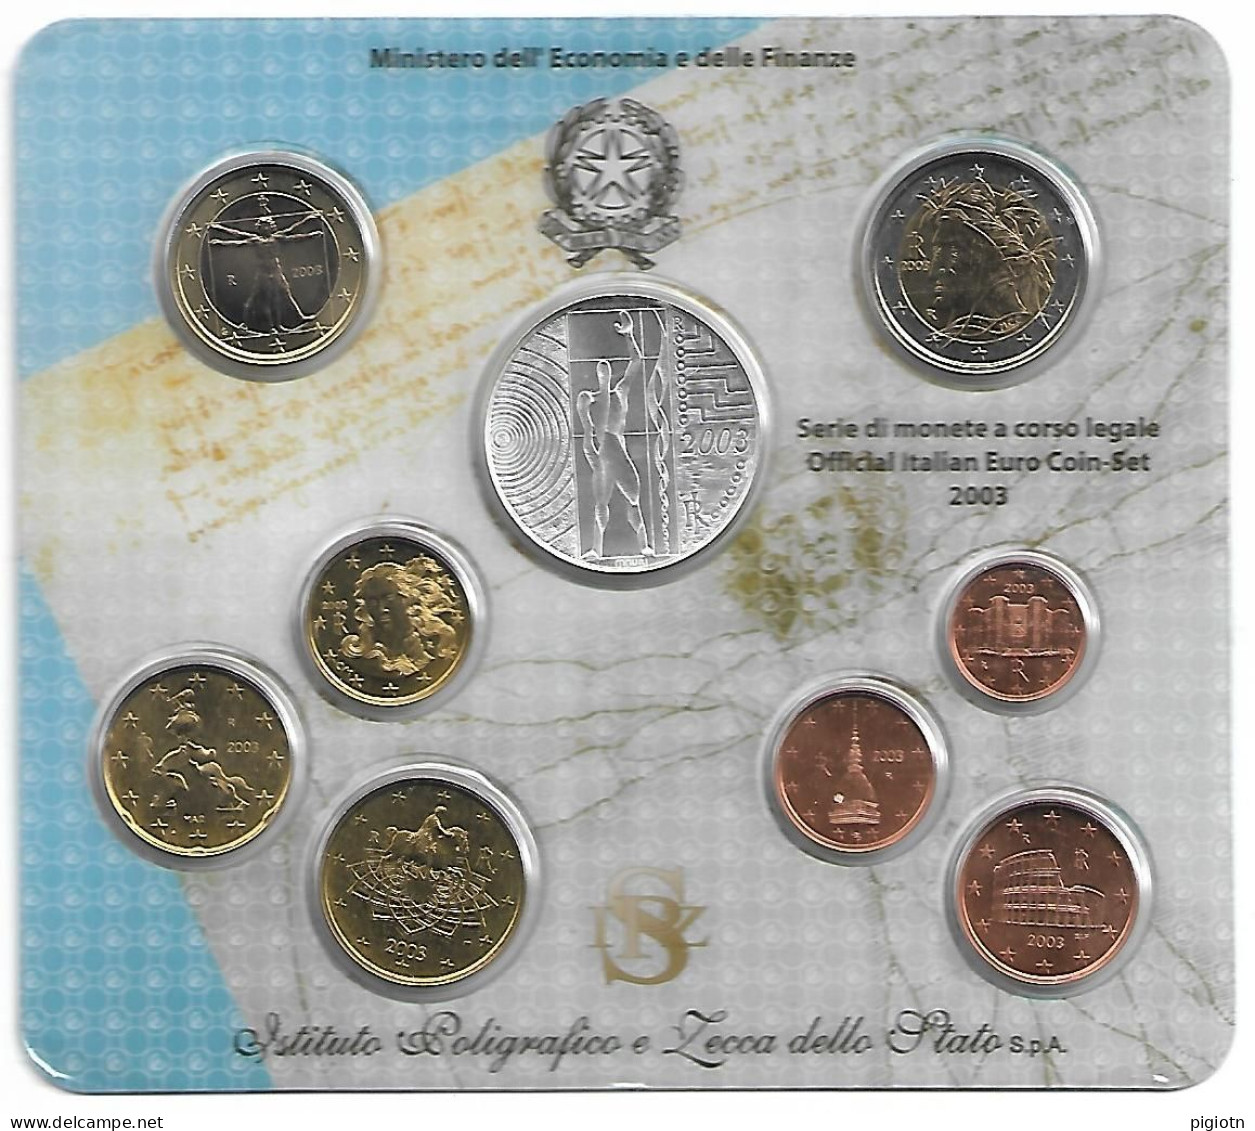 EURO 2003 - SERIE DI MONETE A CORSO LEGALE 2005 OFFICIAL ITALIAN COIN-SET - CON 5 EURO IN ARGENTO EUROPA DEL LAVORO - Mint Sets & Proof Sets